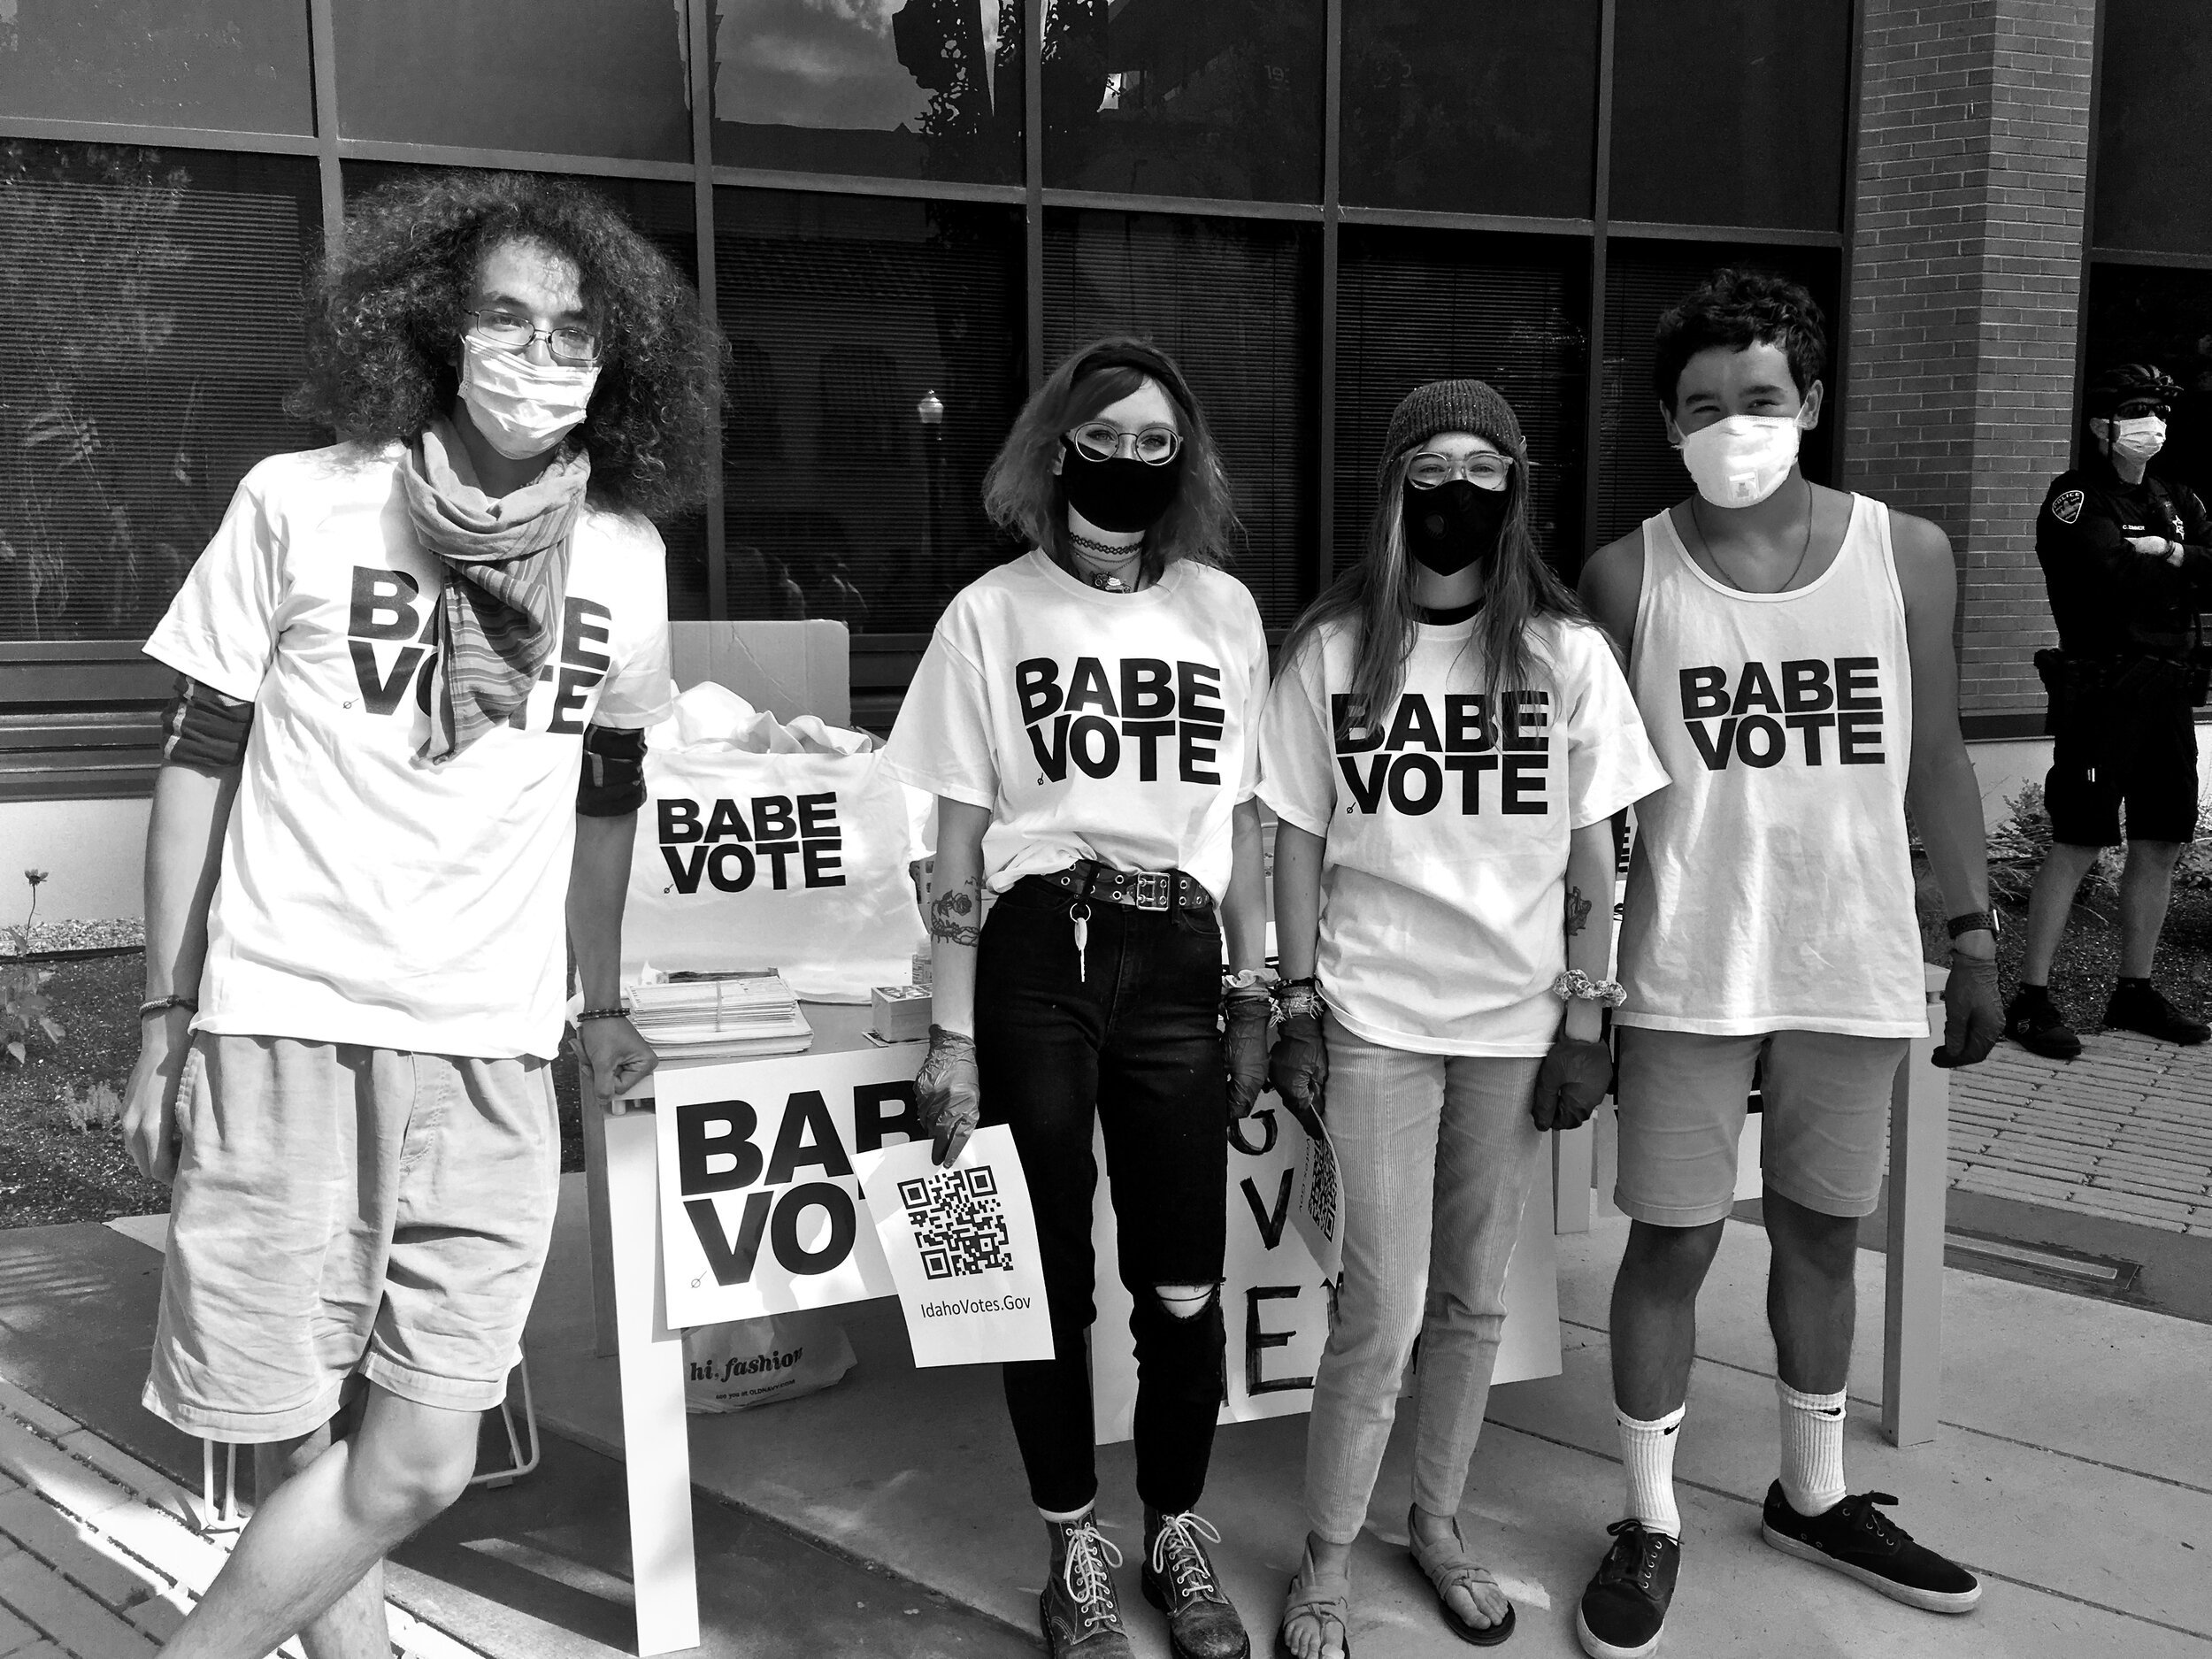 BABE VOTE volunteers registering voters at BLM Rallies